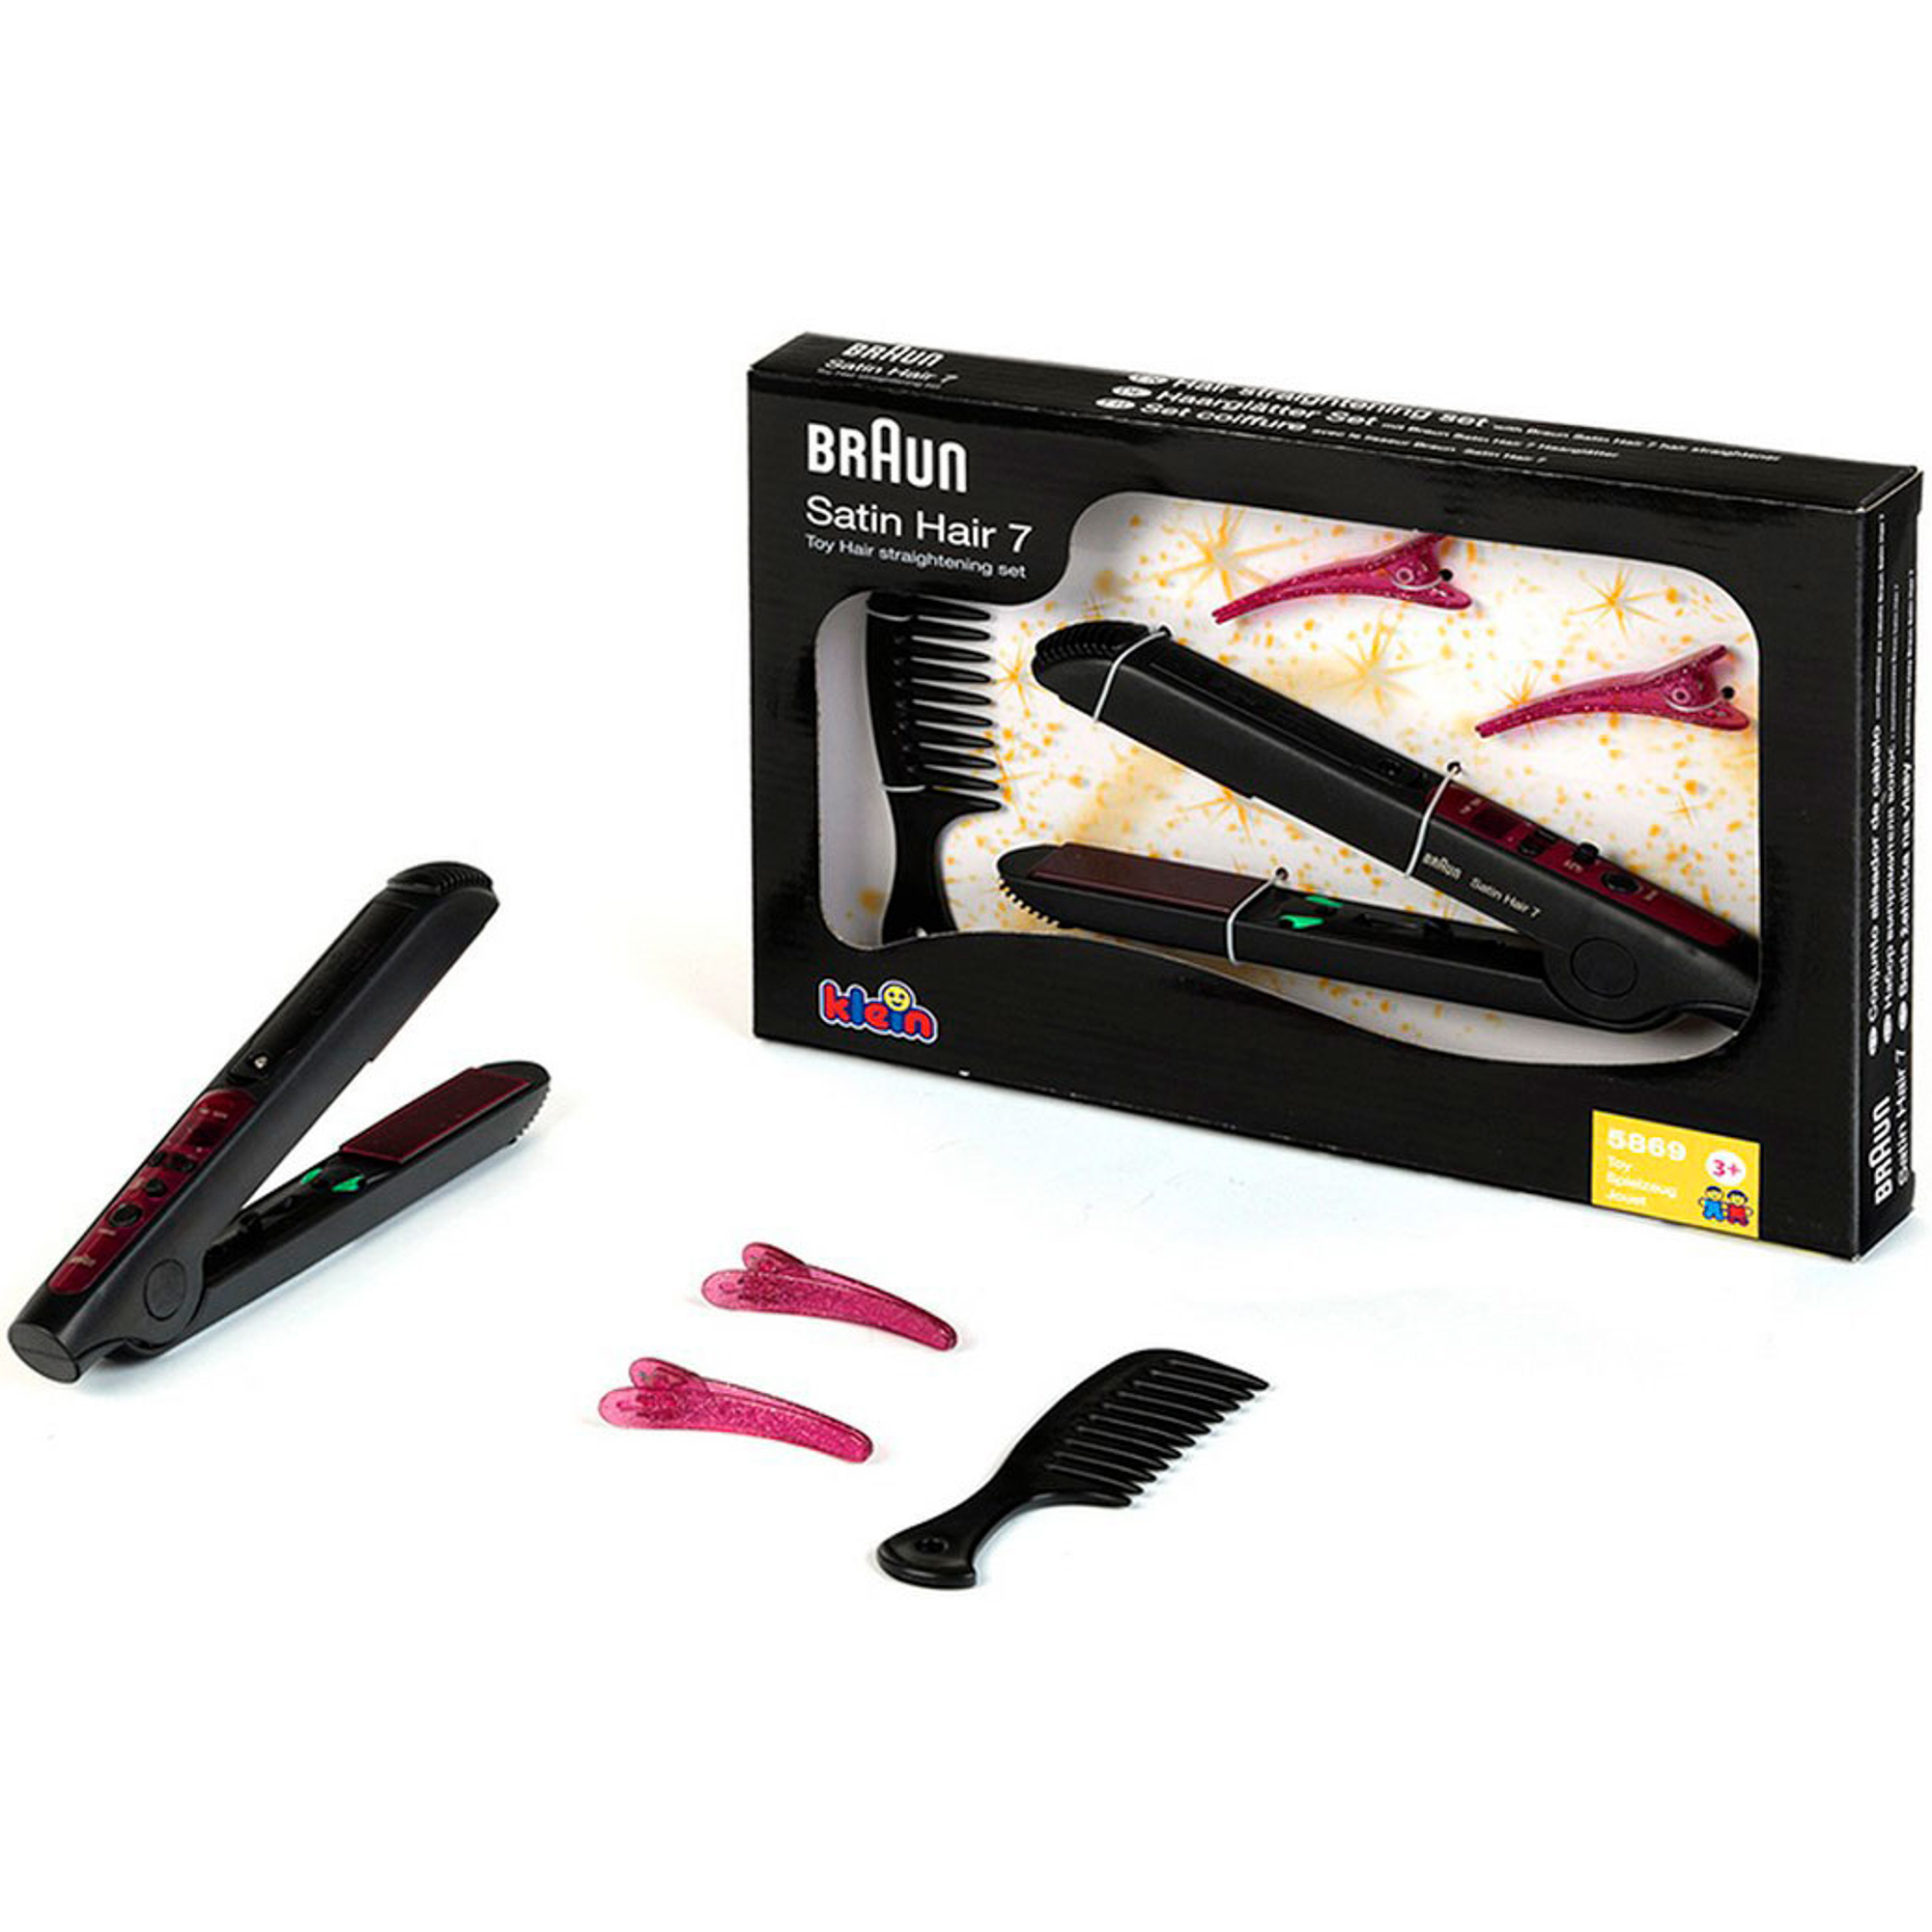 Klein игровой набор braun satin hair 7 модель для причесок